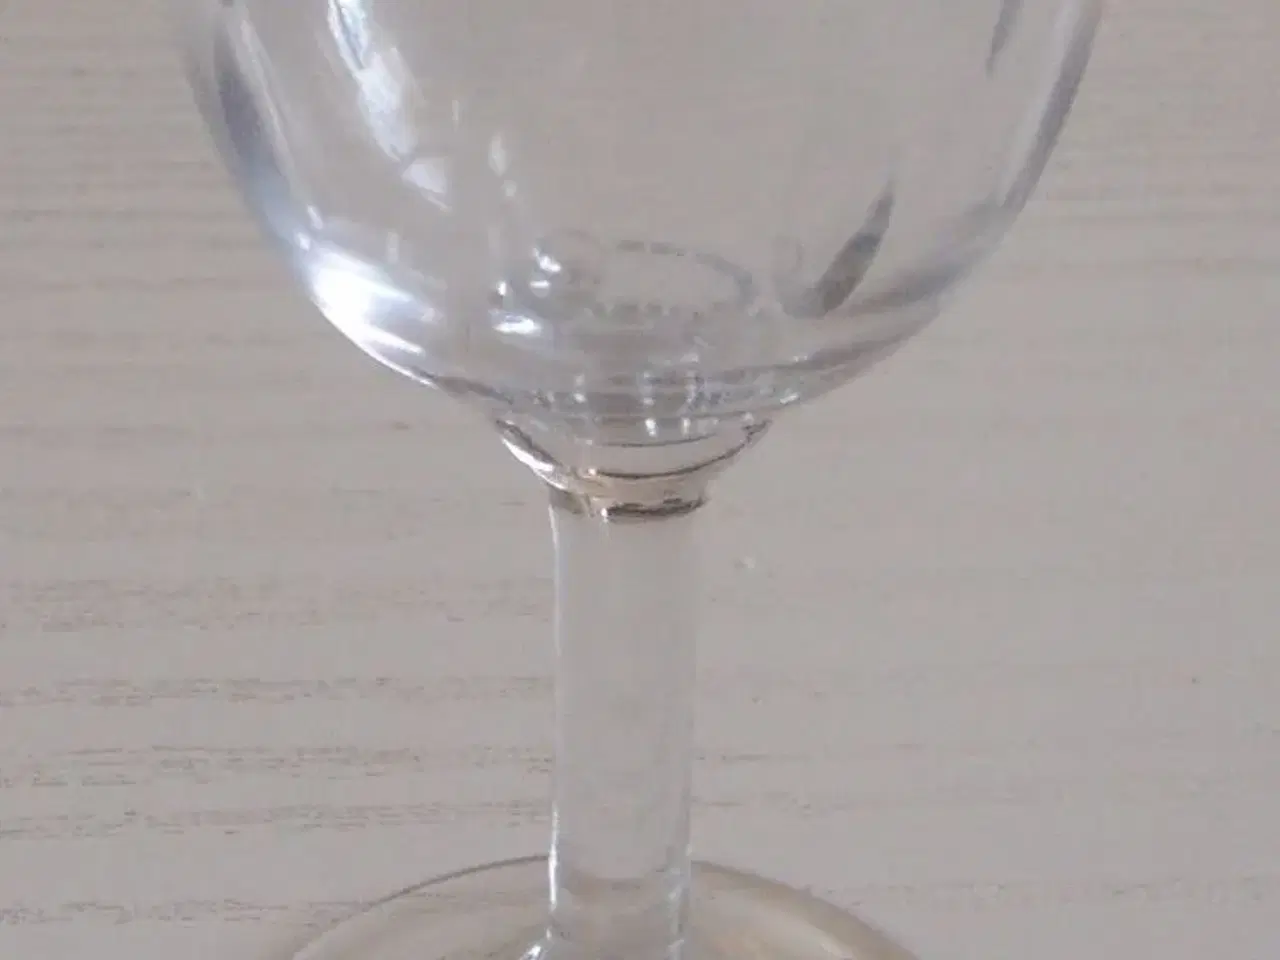 Billede 1 - Portvinsglas